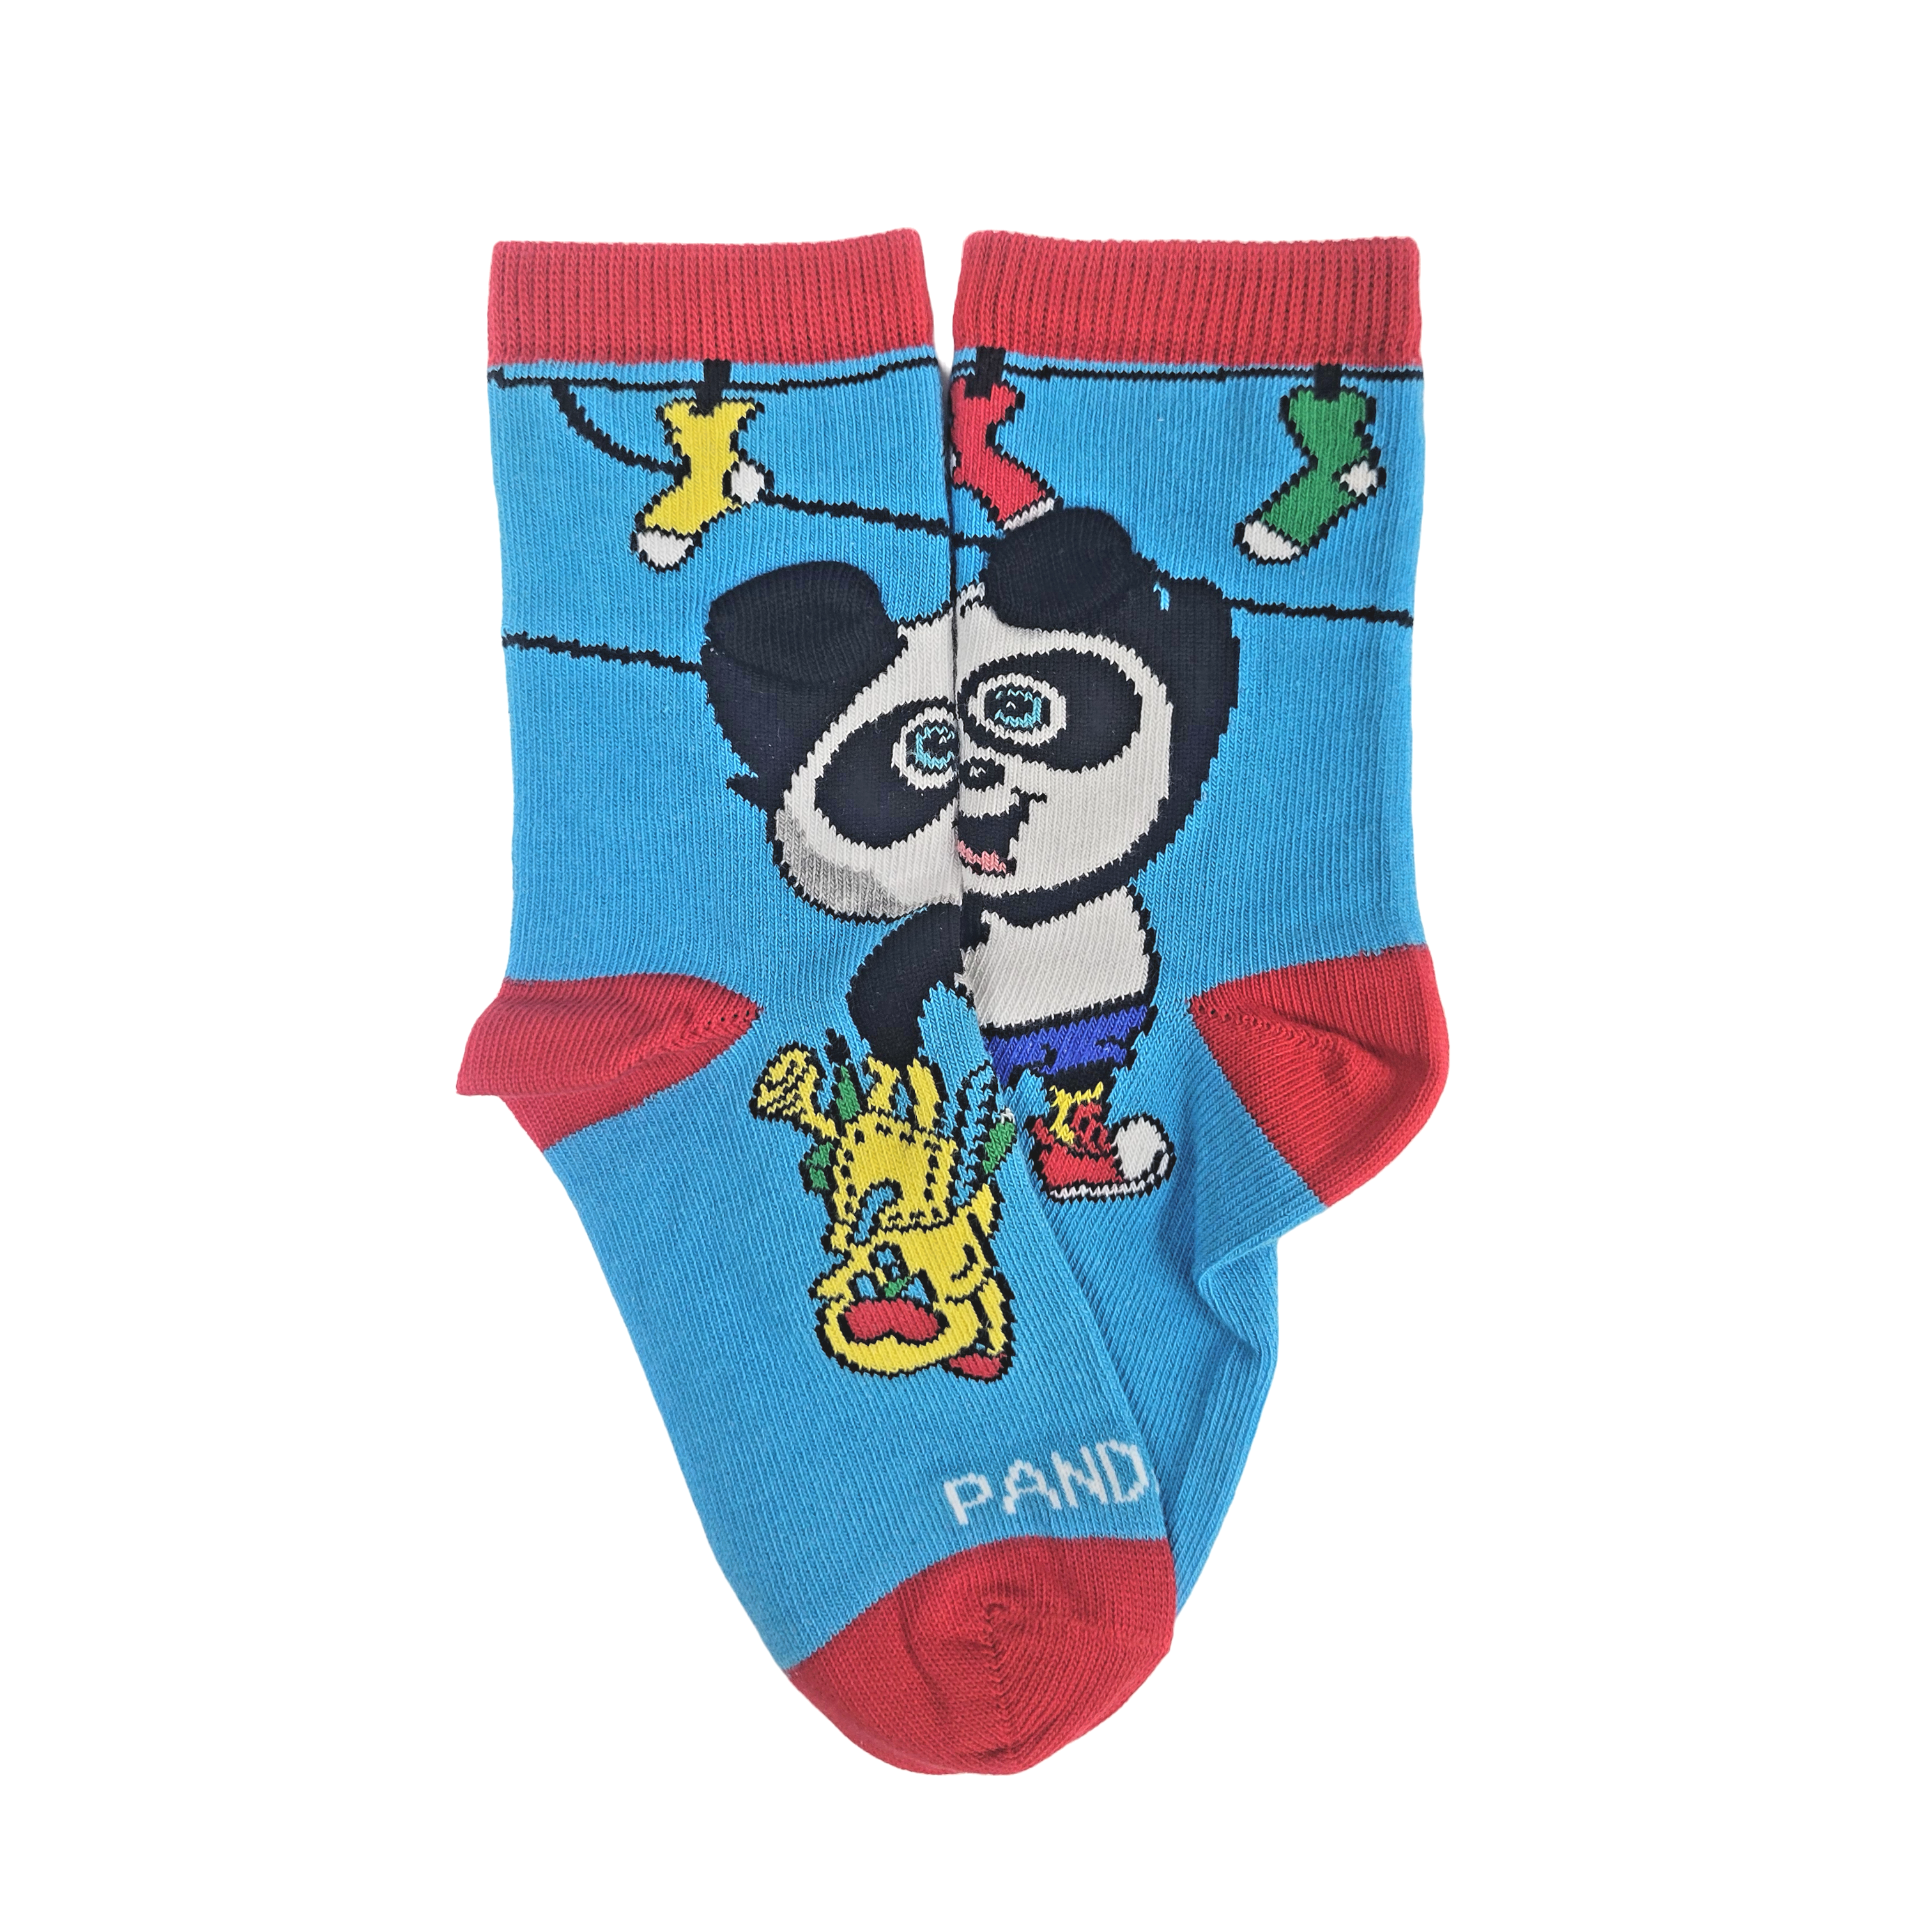 Fun Panda Socks from the Sock Panda (Ages 3-7)